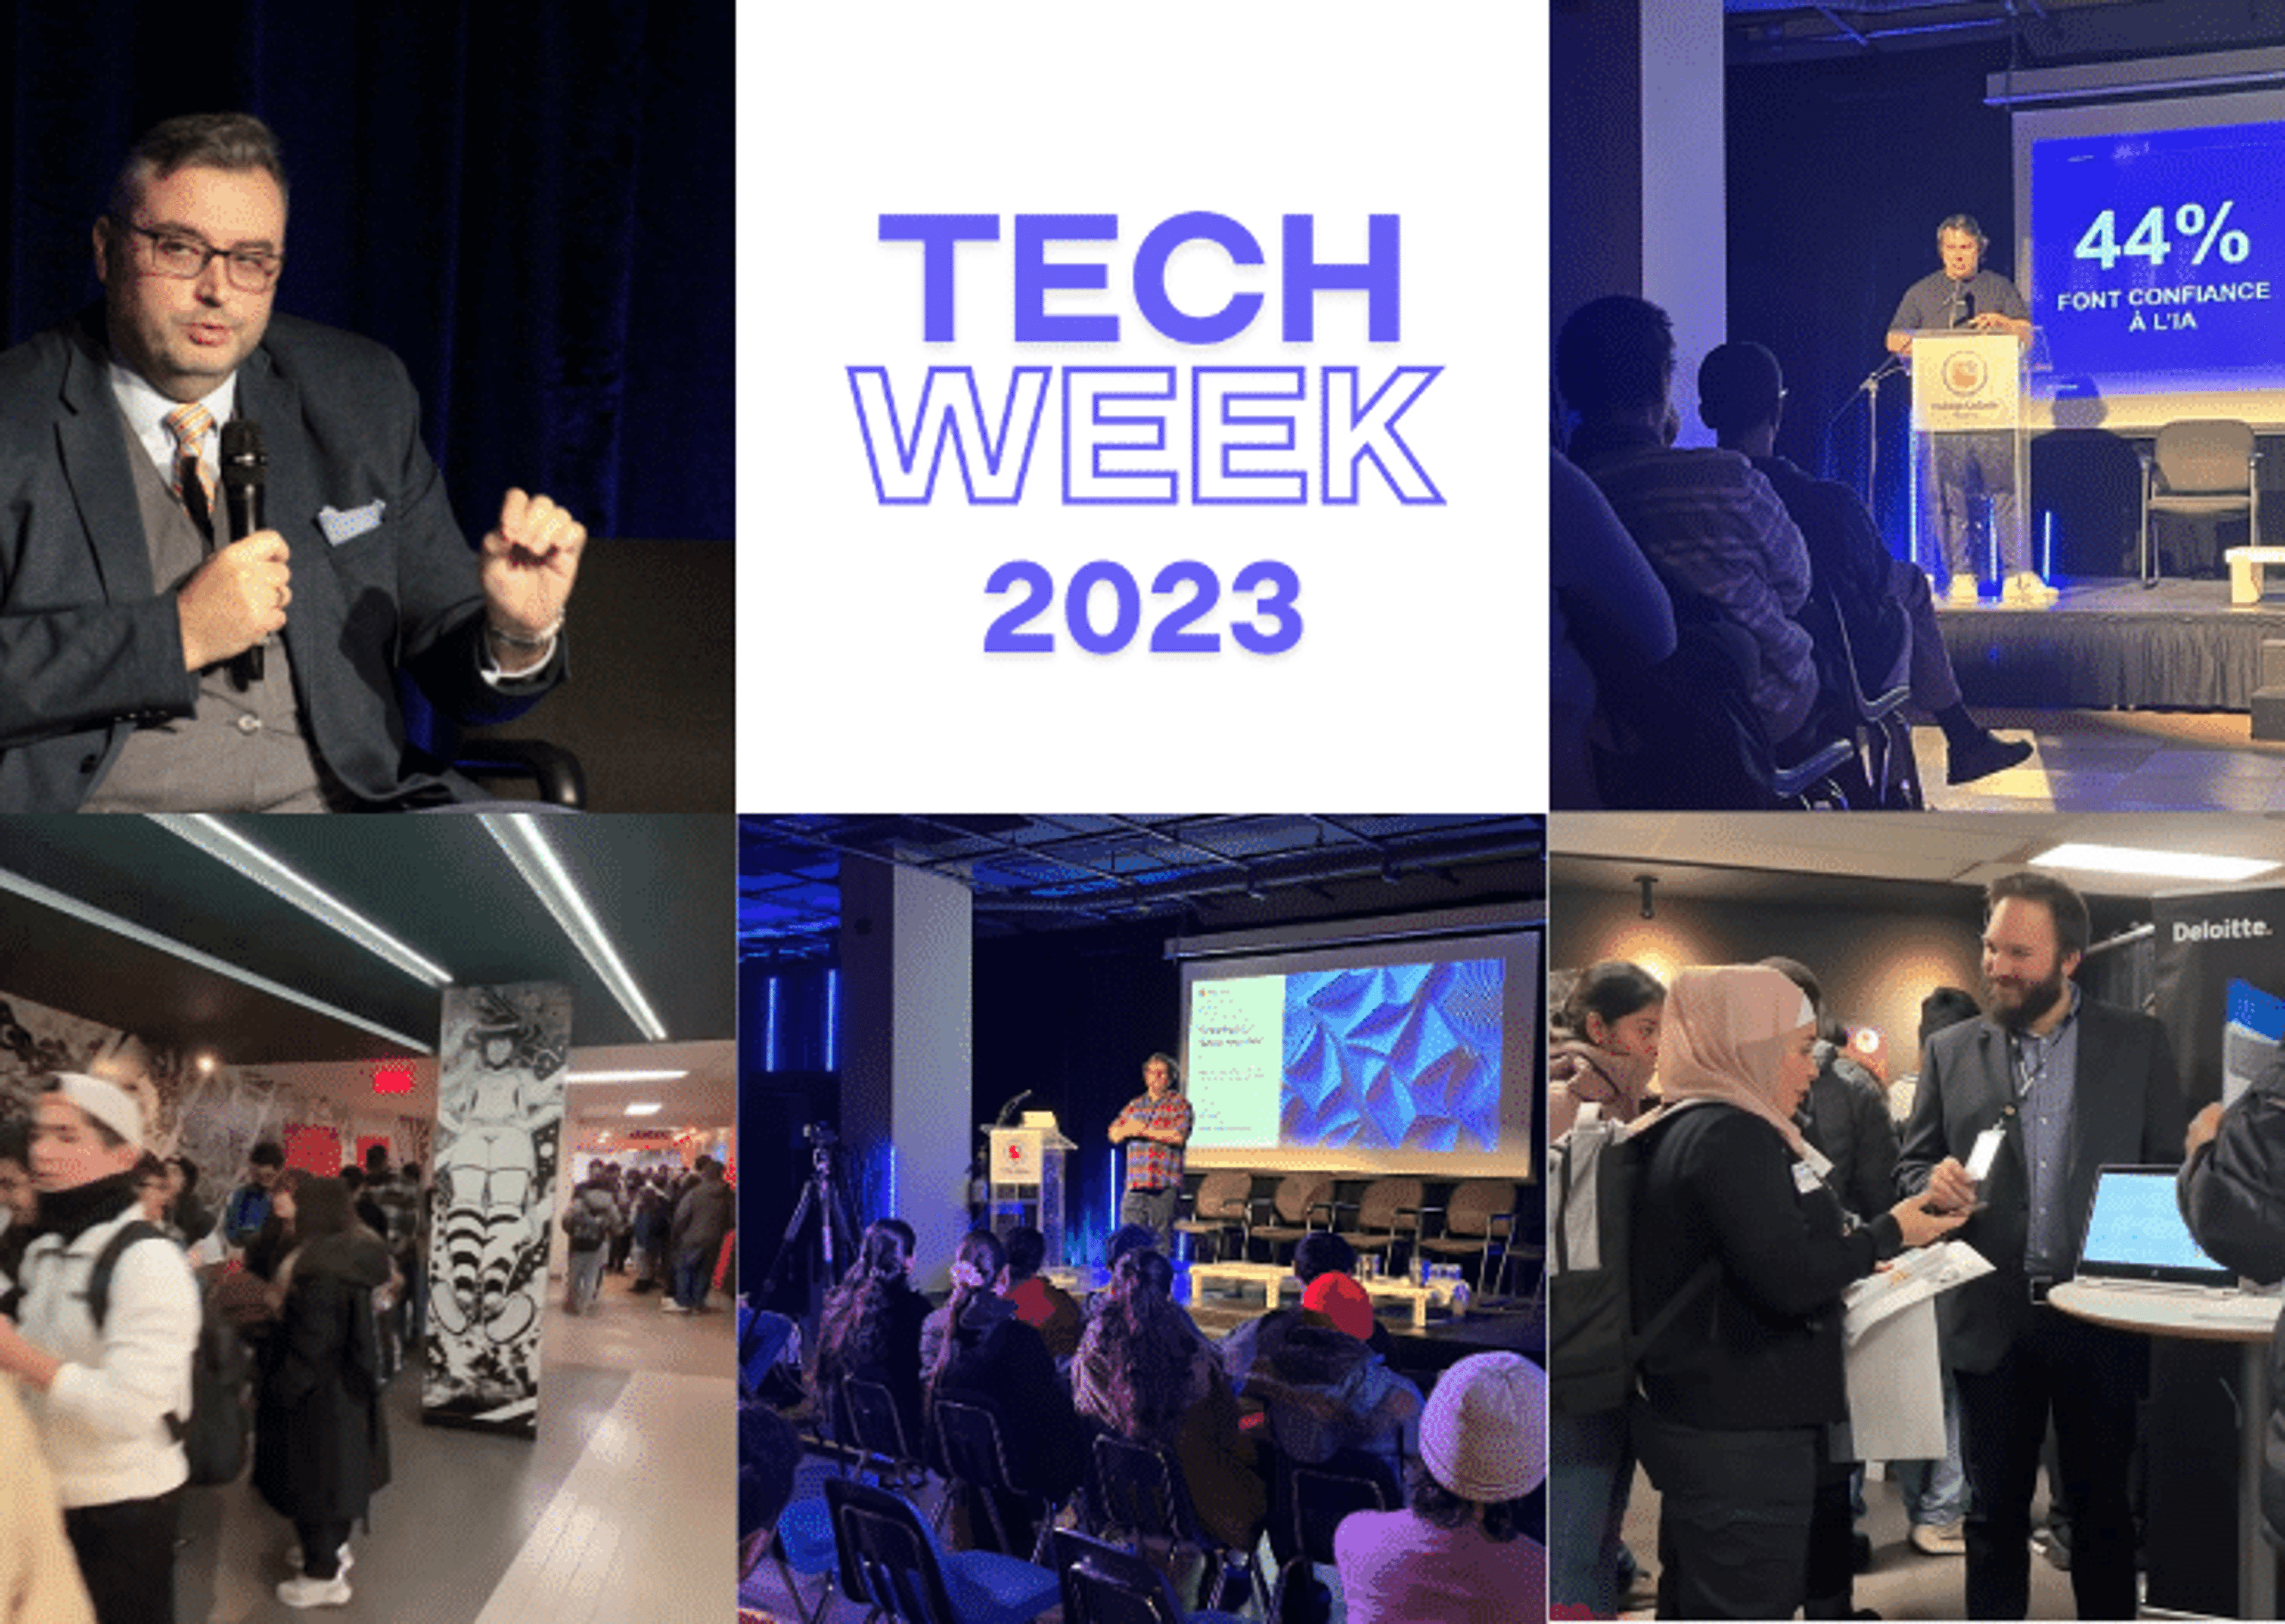 Collage mettant en vedette des conférenciers, l'engagement du public et le réseautage lors de la Tech Week 2023, soulignant la communauté et la discussion technologiques.